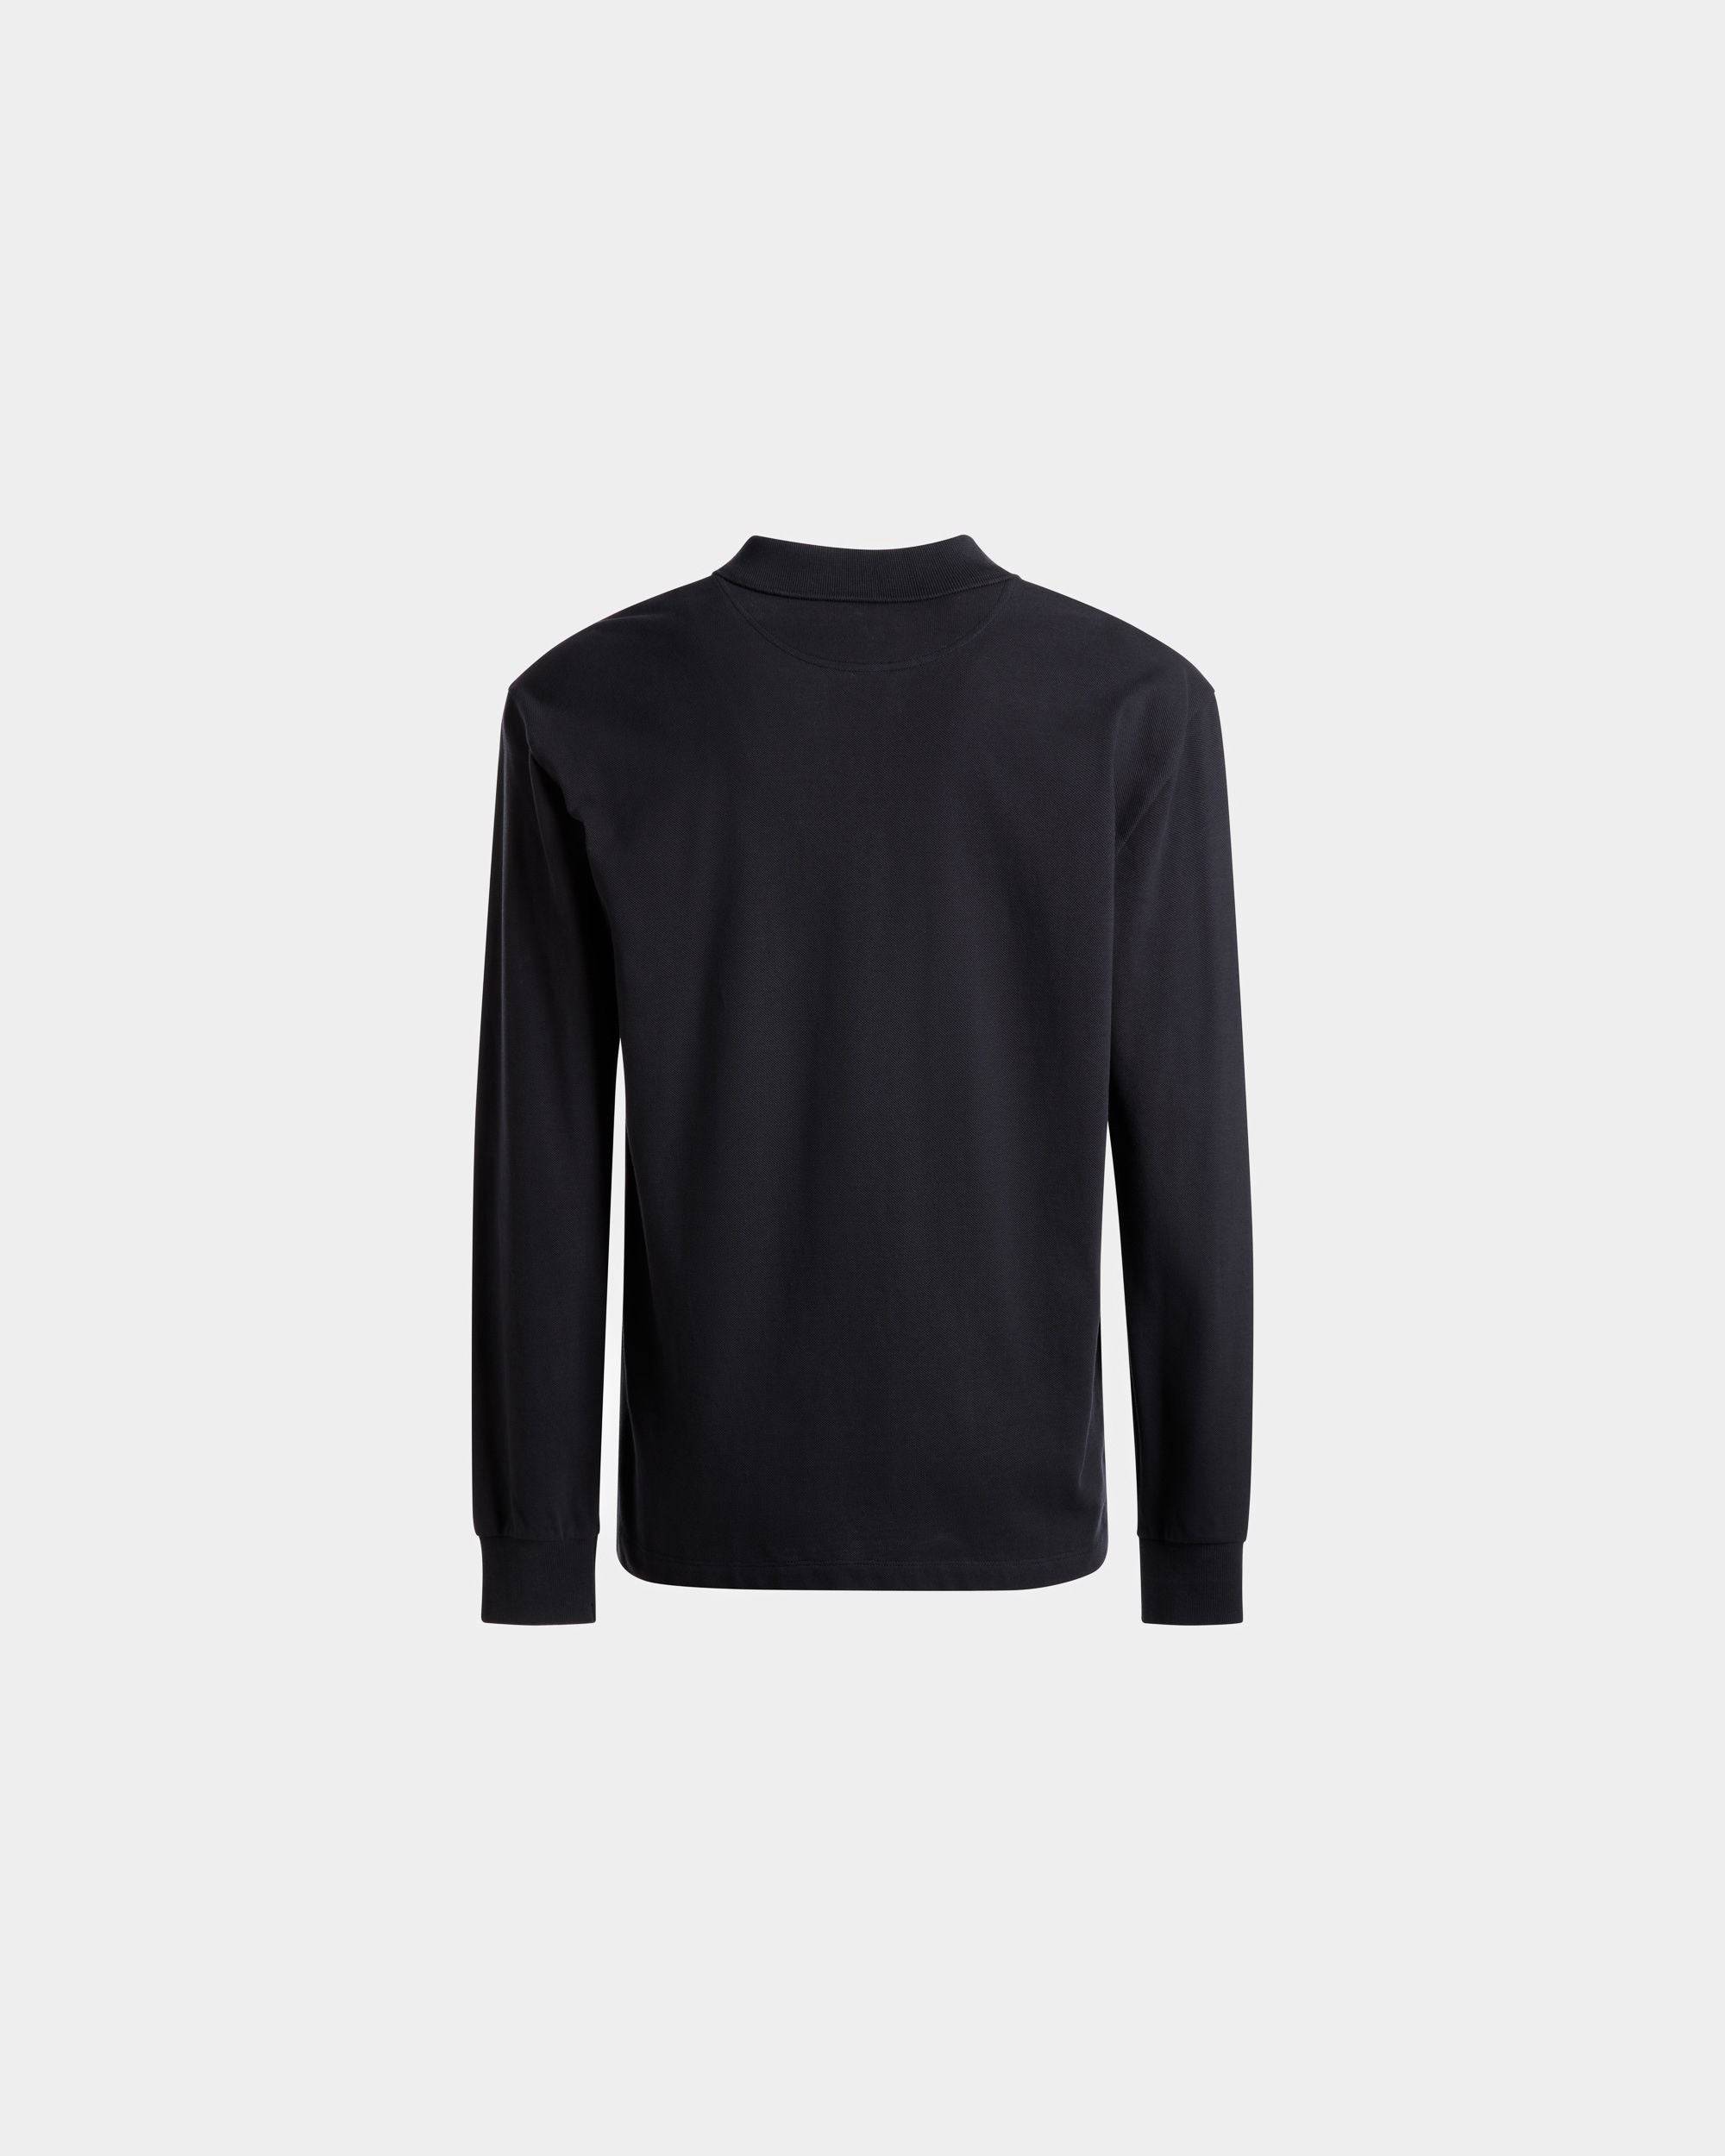 Langarm-Poloshirt | Polohemd für Herren | Baumwolle in Mitternachtsblau | Bally | Still Life Rückseite